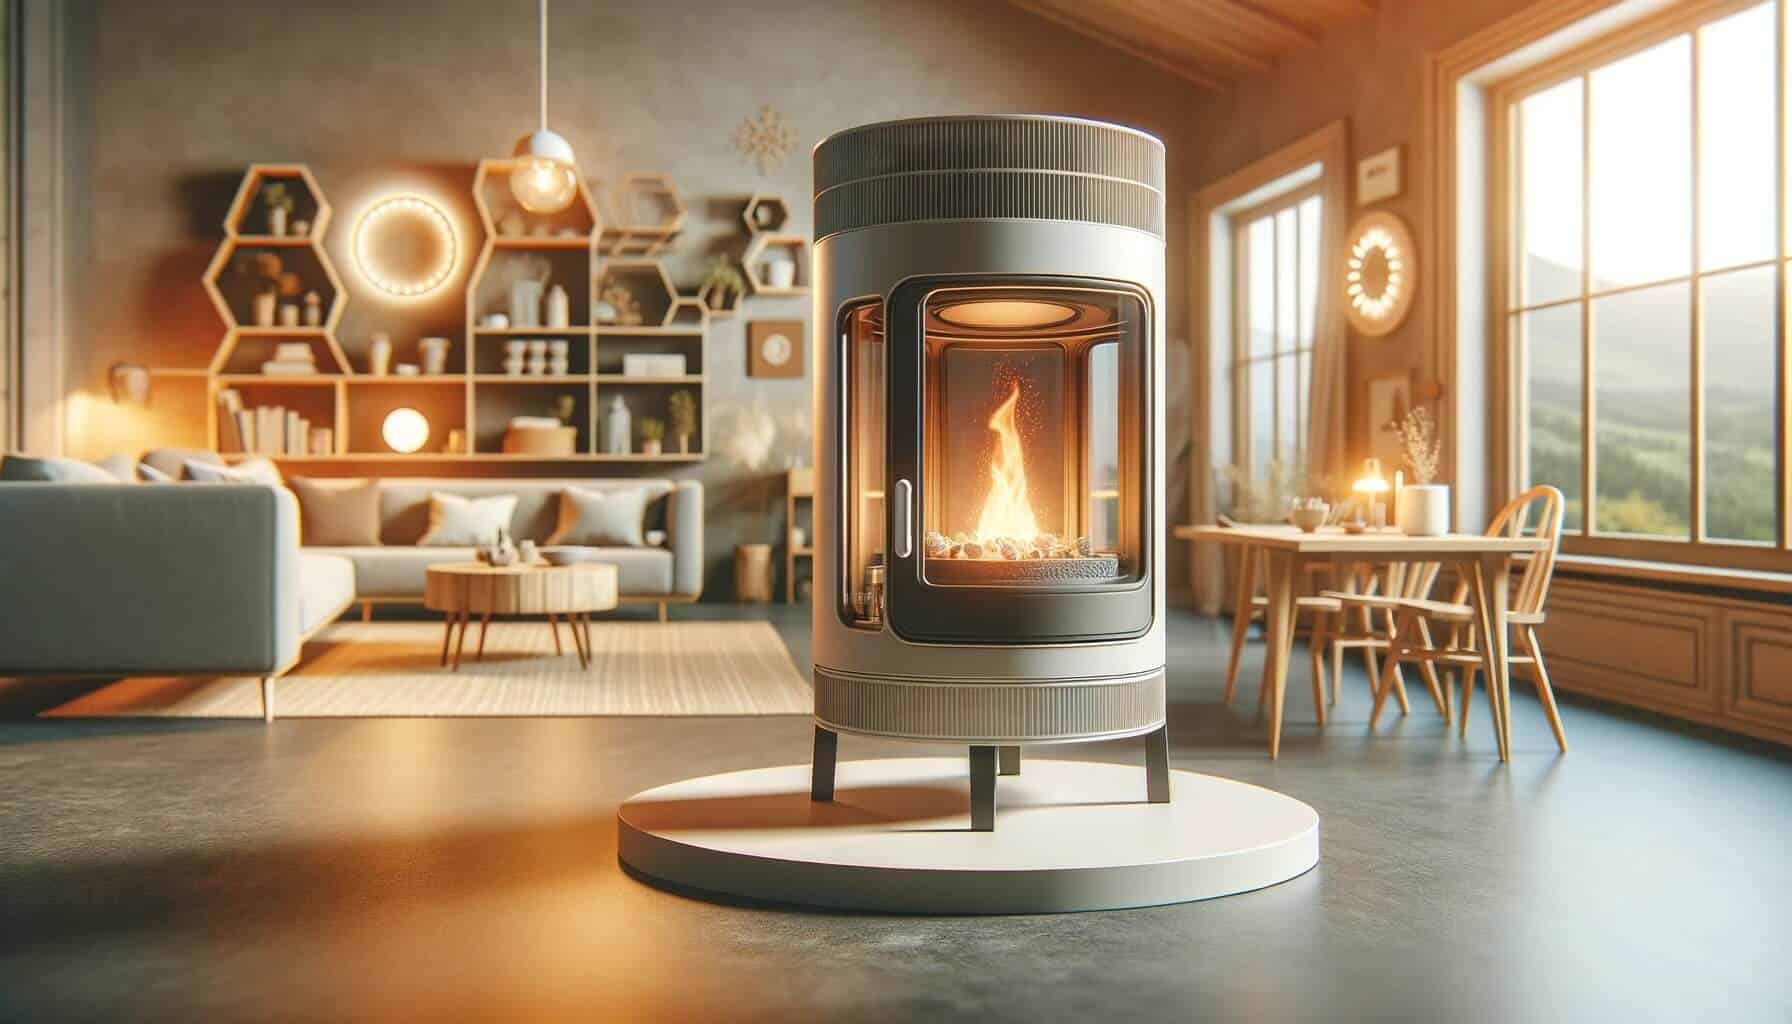 Costruisci una stufa pirolitica per riscaldare casa a a costo zero senza inquinare